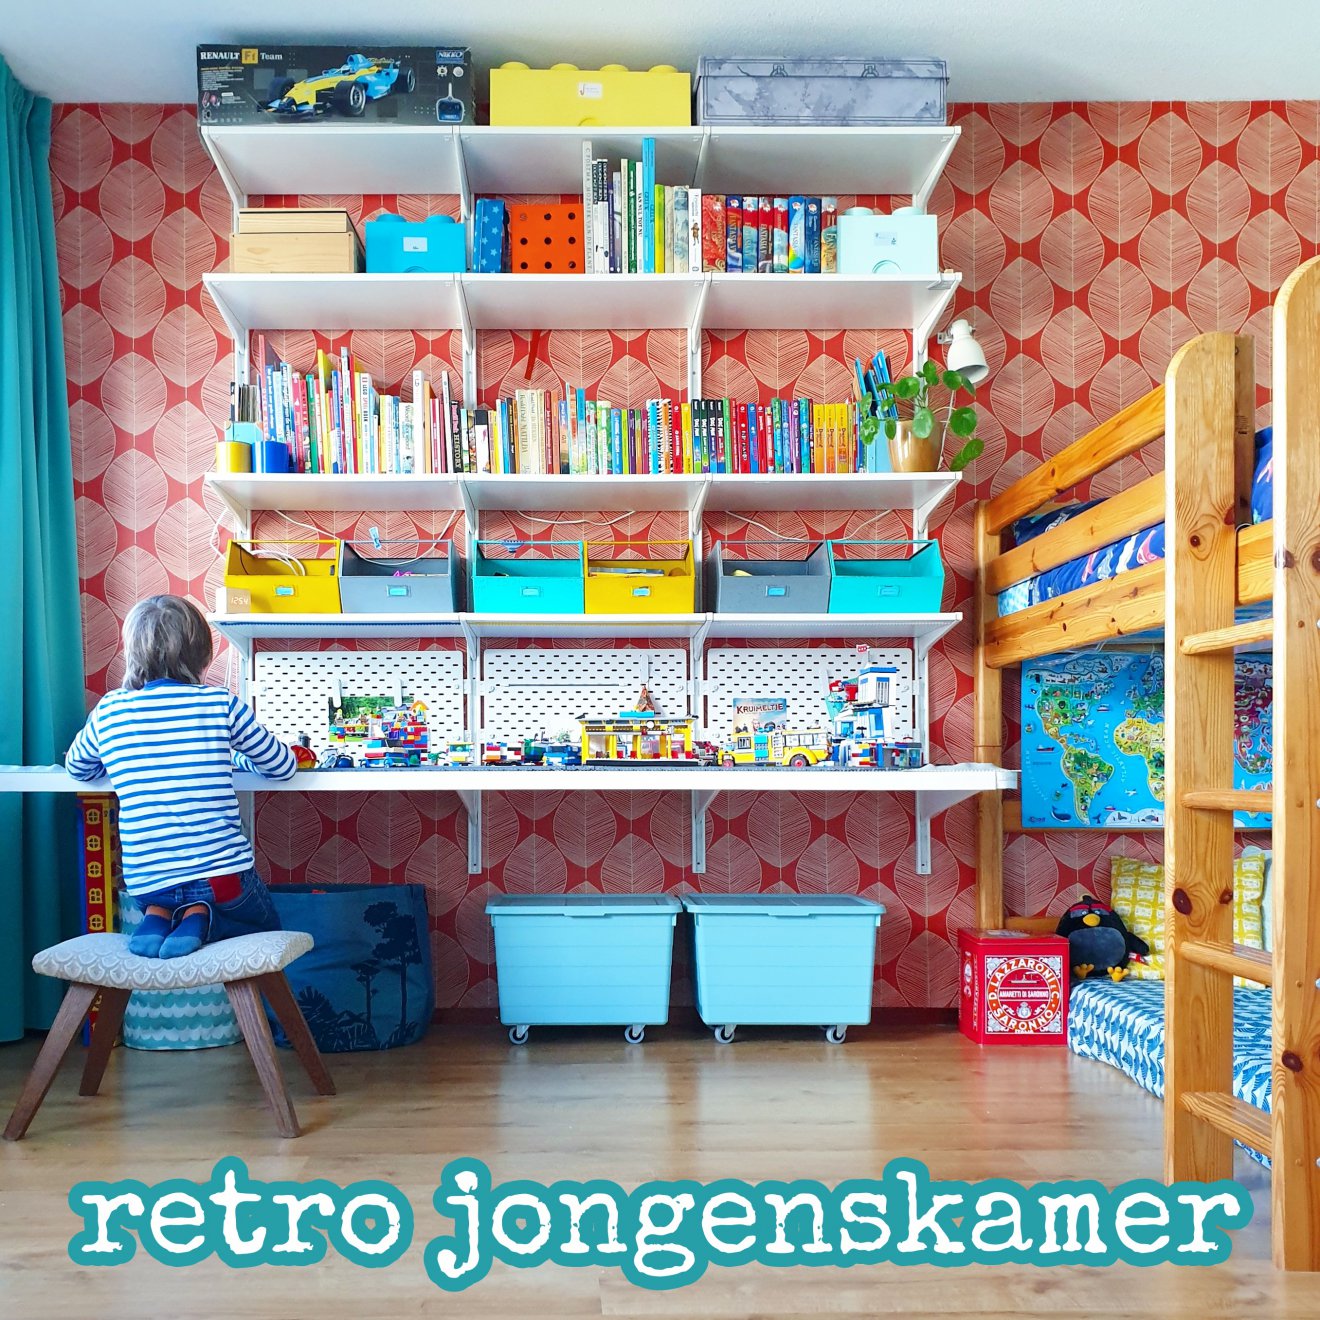 Kinderkamer inspiratie: retro jongenskamer met hout, blauw, rood en geel